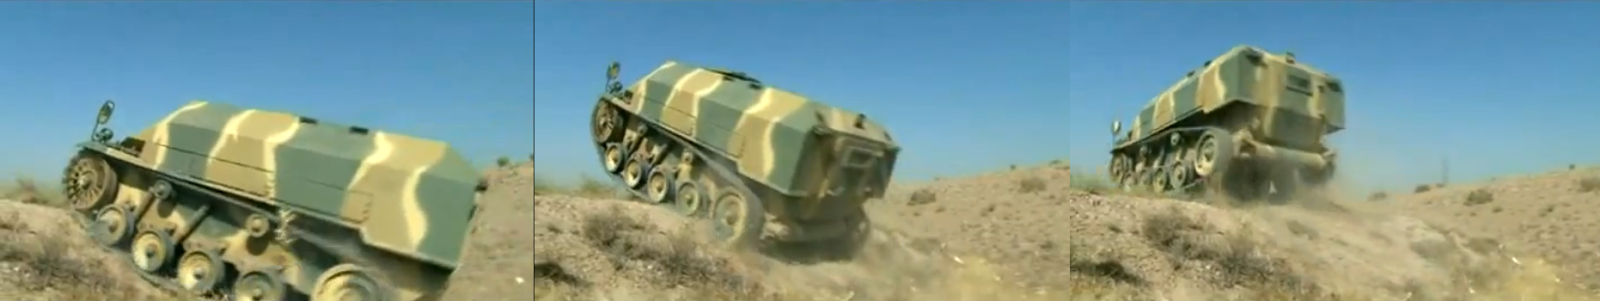 fuerza - Fuerzas Armadas de Iran Screenshot+Video